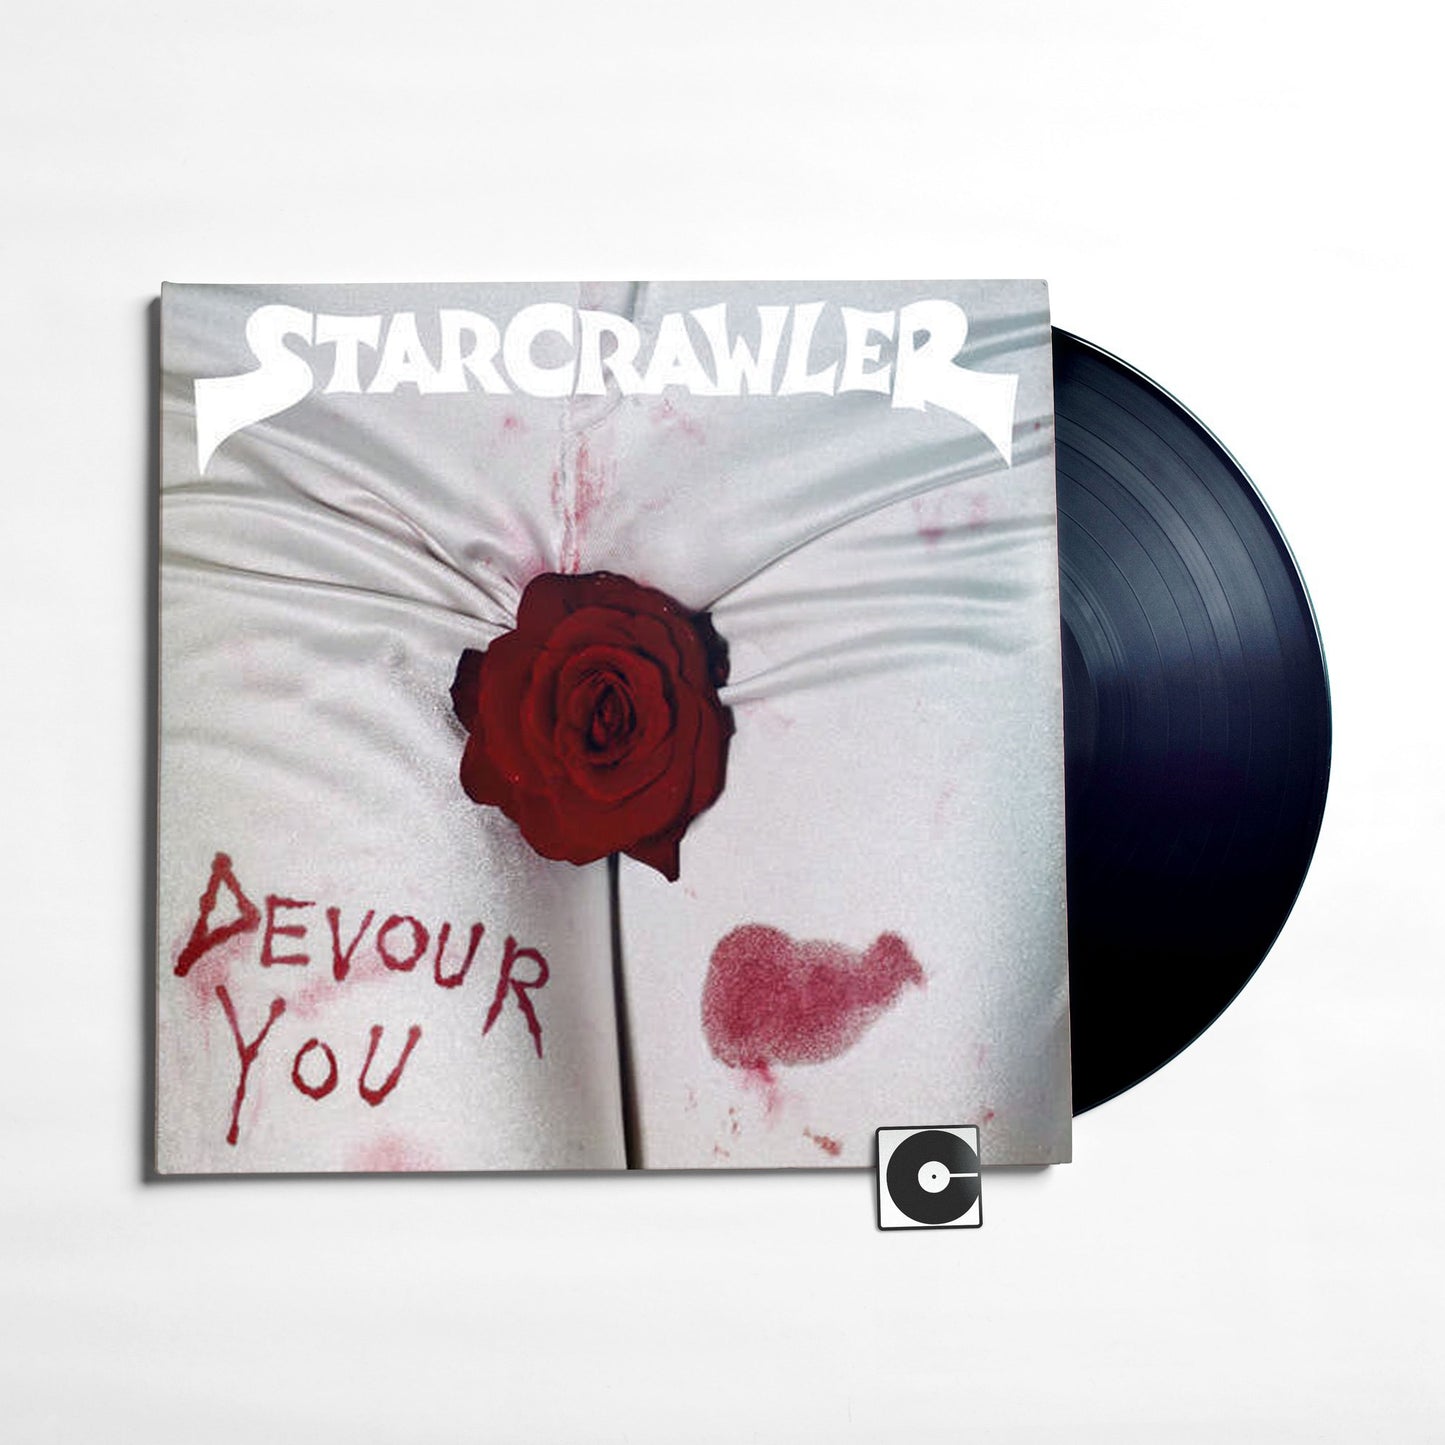 Starcrawler - "Devour You"